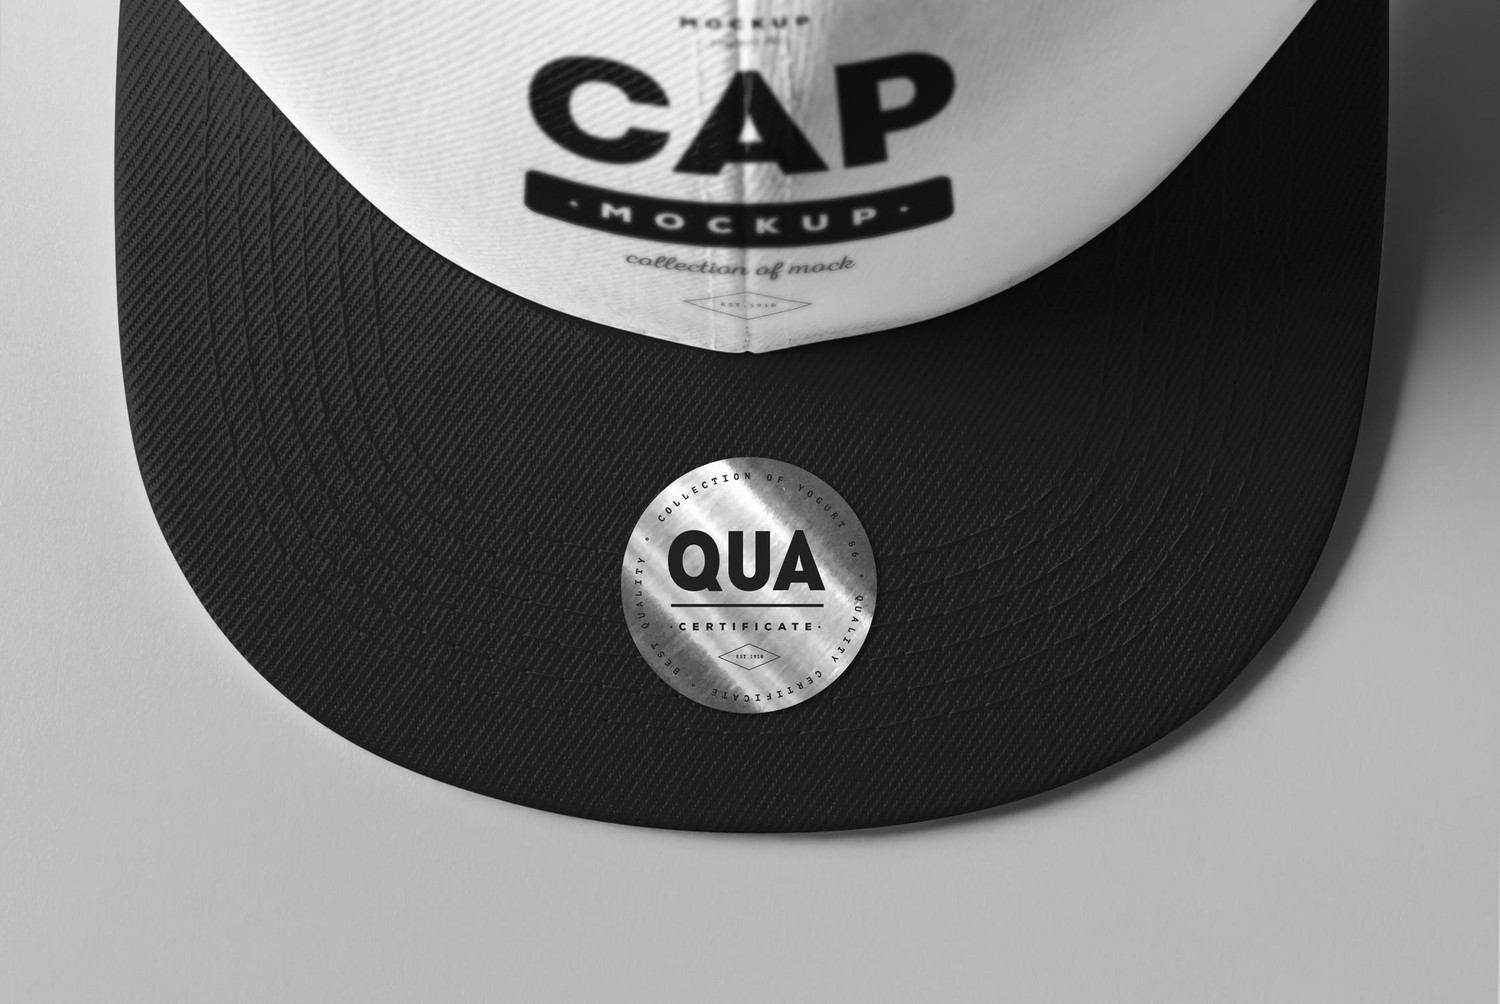 4707 8款平檐帽子嘻哈街舞棒球帽logo印花图案设计贴图ps样机素材模板 Cap Mock-up@GOOODME.COM